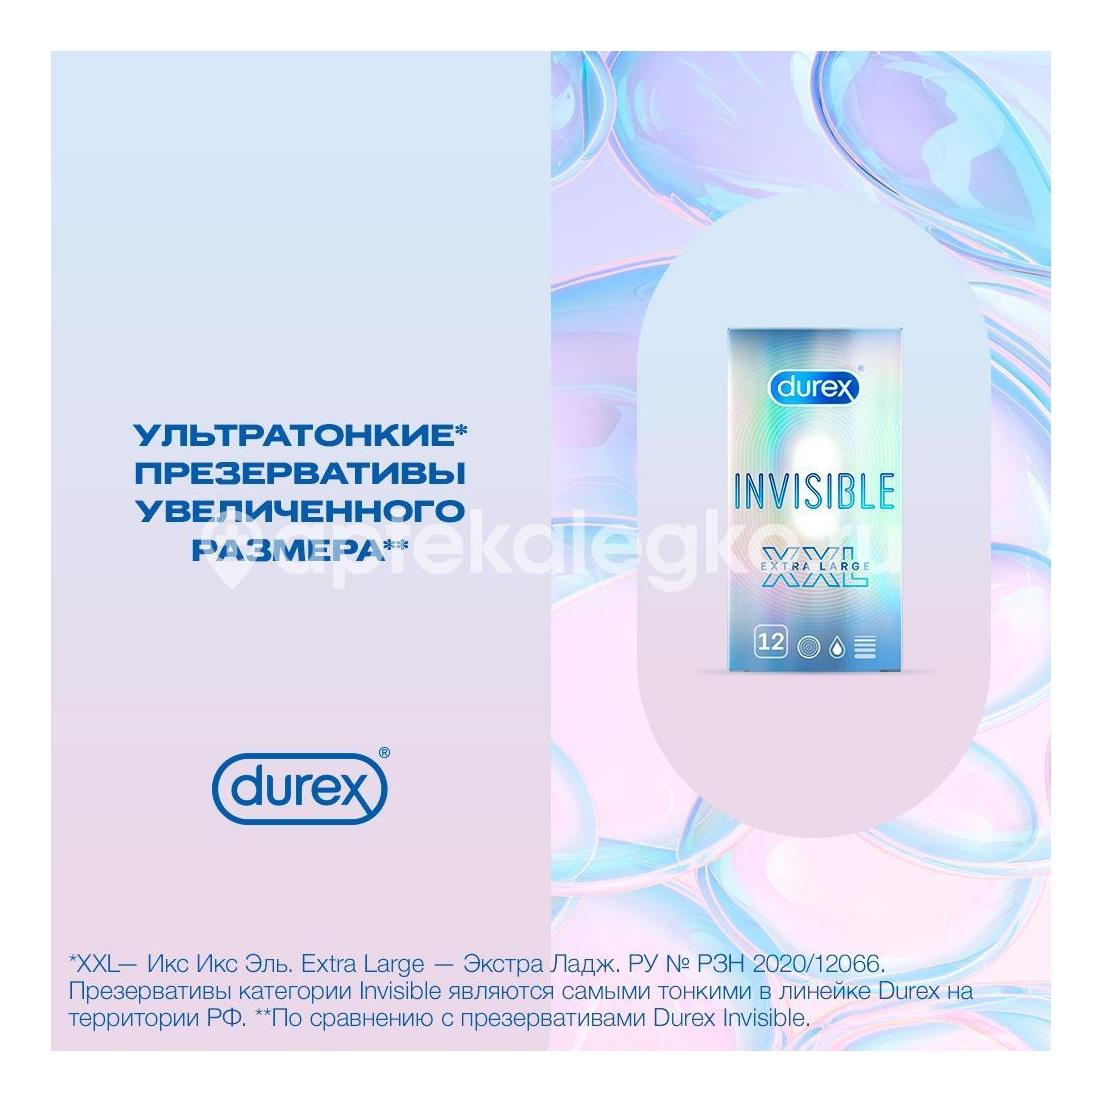 Дюрекс презерватив invisible №12 [durex] - 6